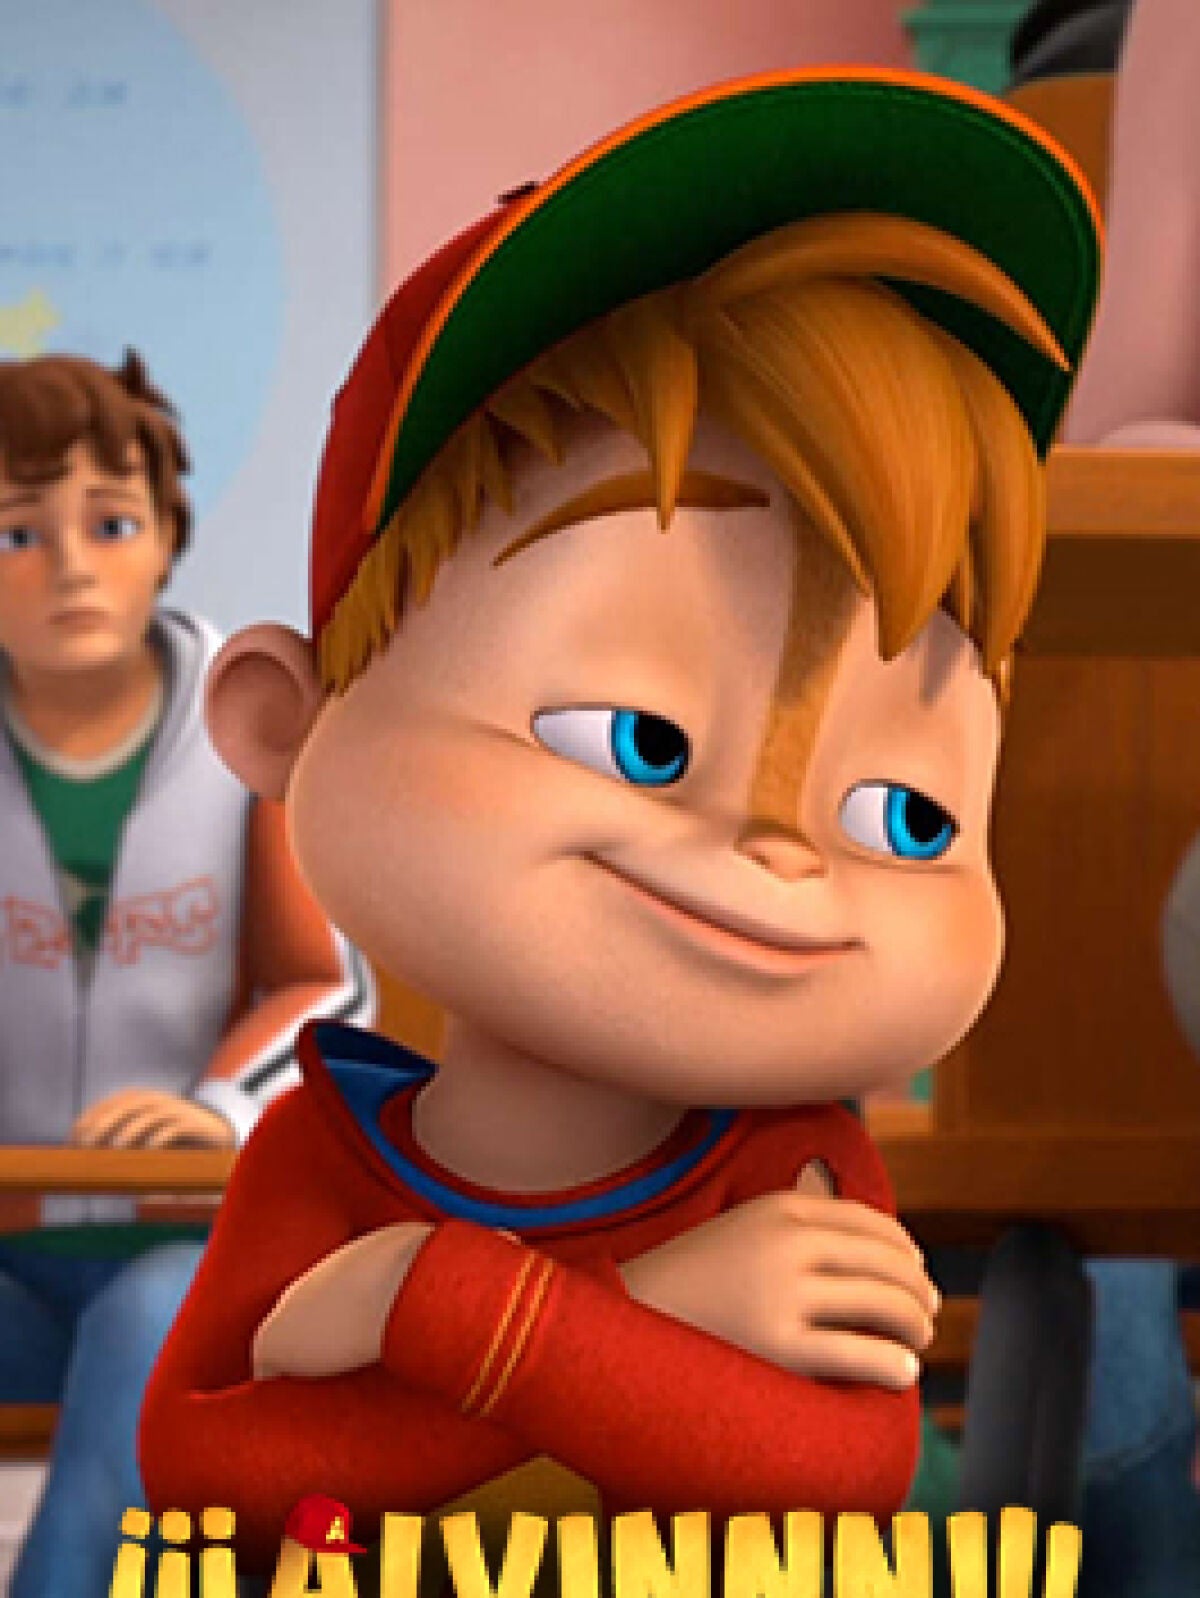 Nuevos episodios de “Alvin y las ardillas” en Nickelodeon 